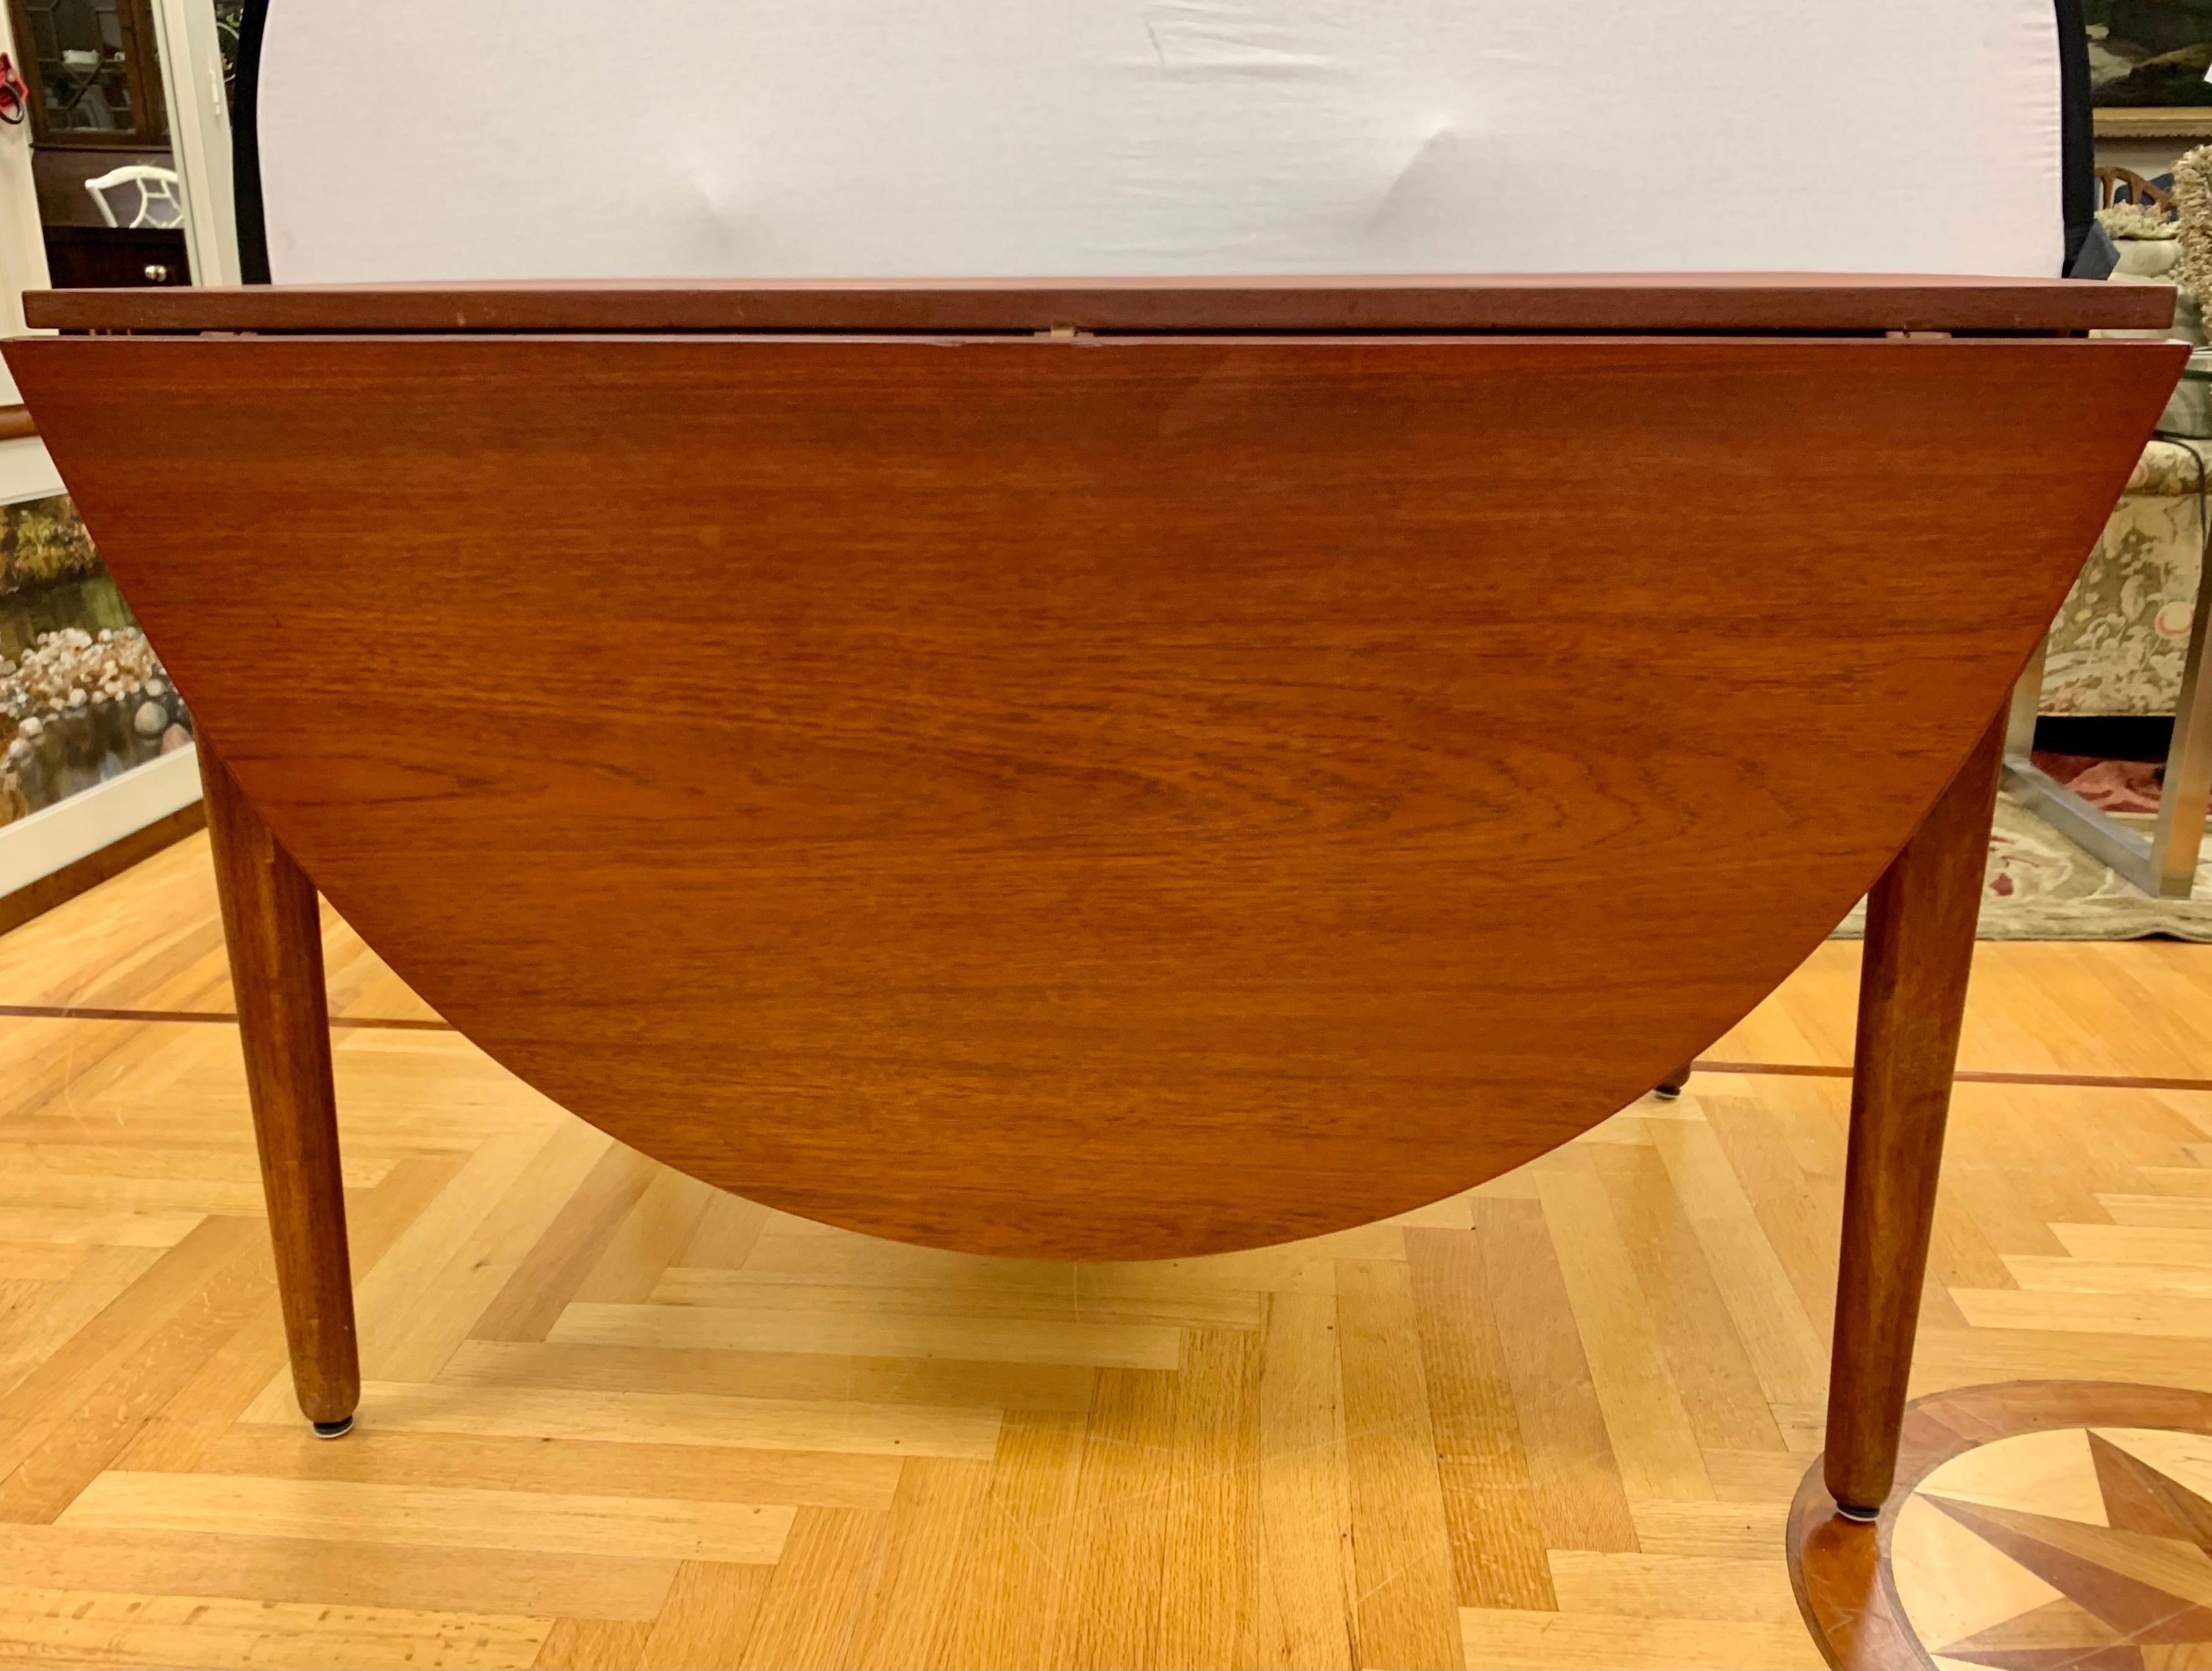 Signed Dining Table by Arne Vodder for Vamo 1958 Danish Mid-Century Modern 1